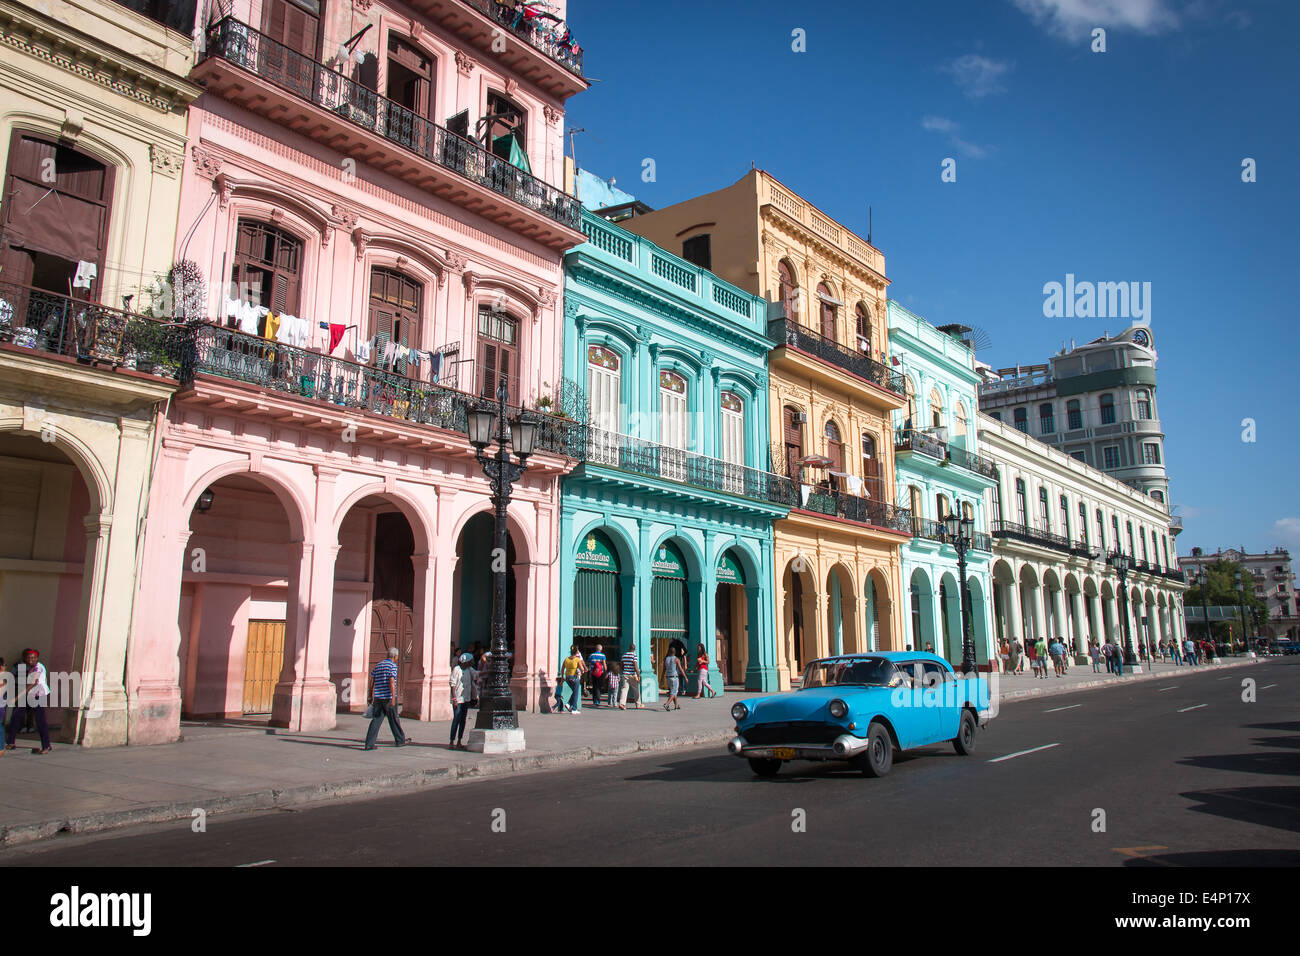 Edificios pintados en tonos pastel con muebles antiguos de coche en primer plano, el Capitolio, La Habana, Cuba Foto de stock